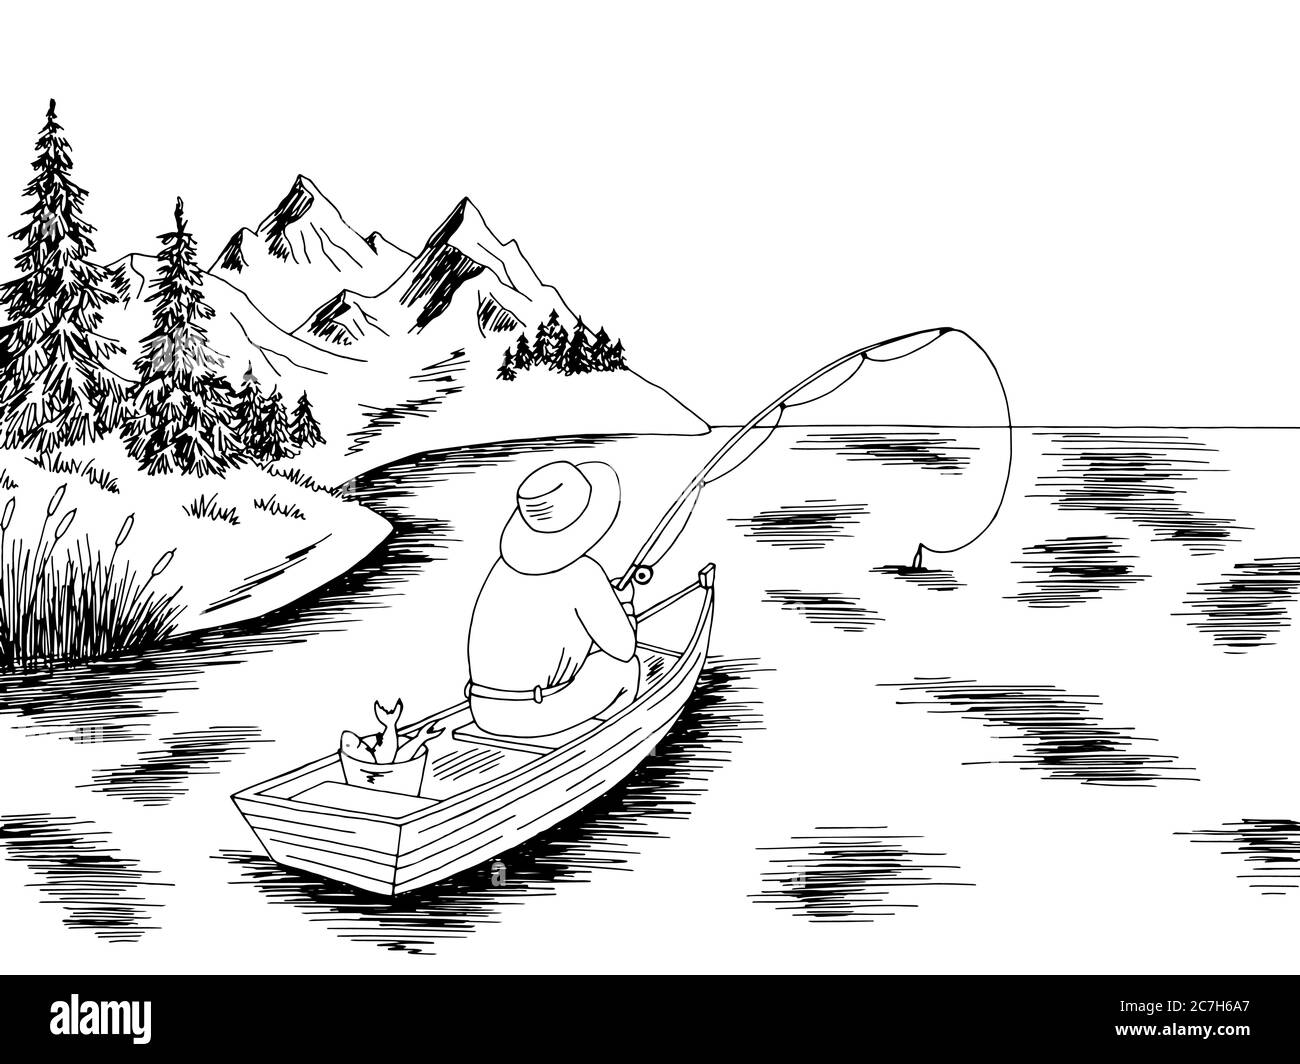 Como dibujar un bote de pesca fotografías e imágenes de alta resolución -  Alamy